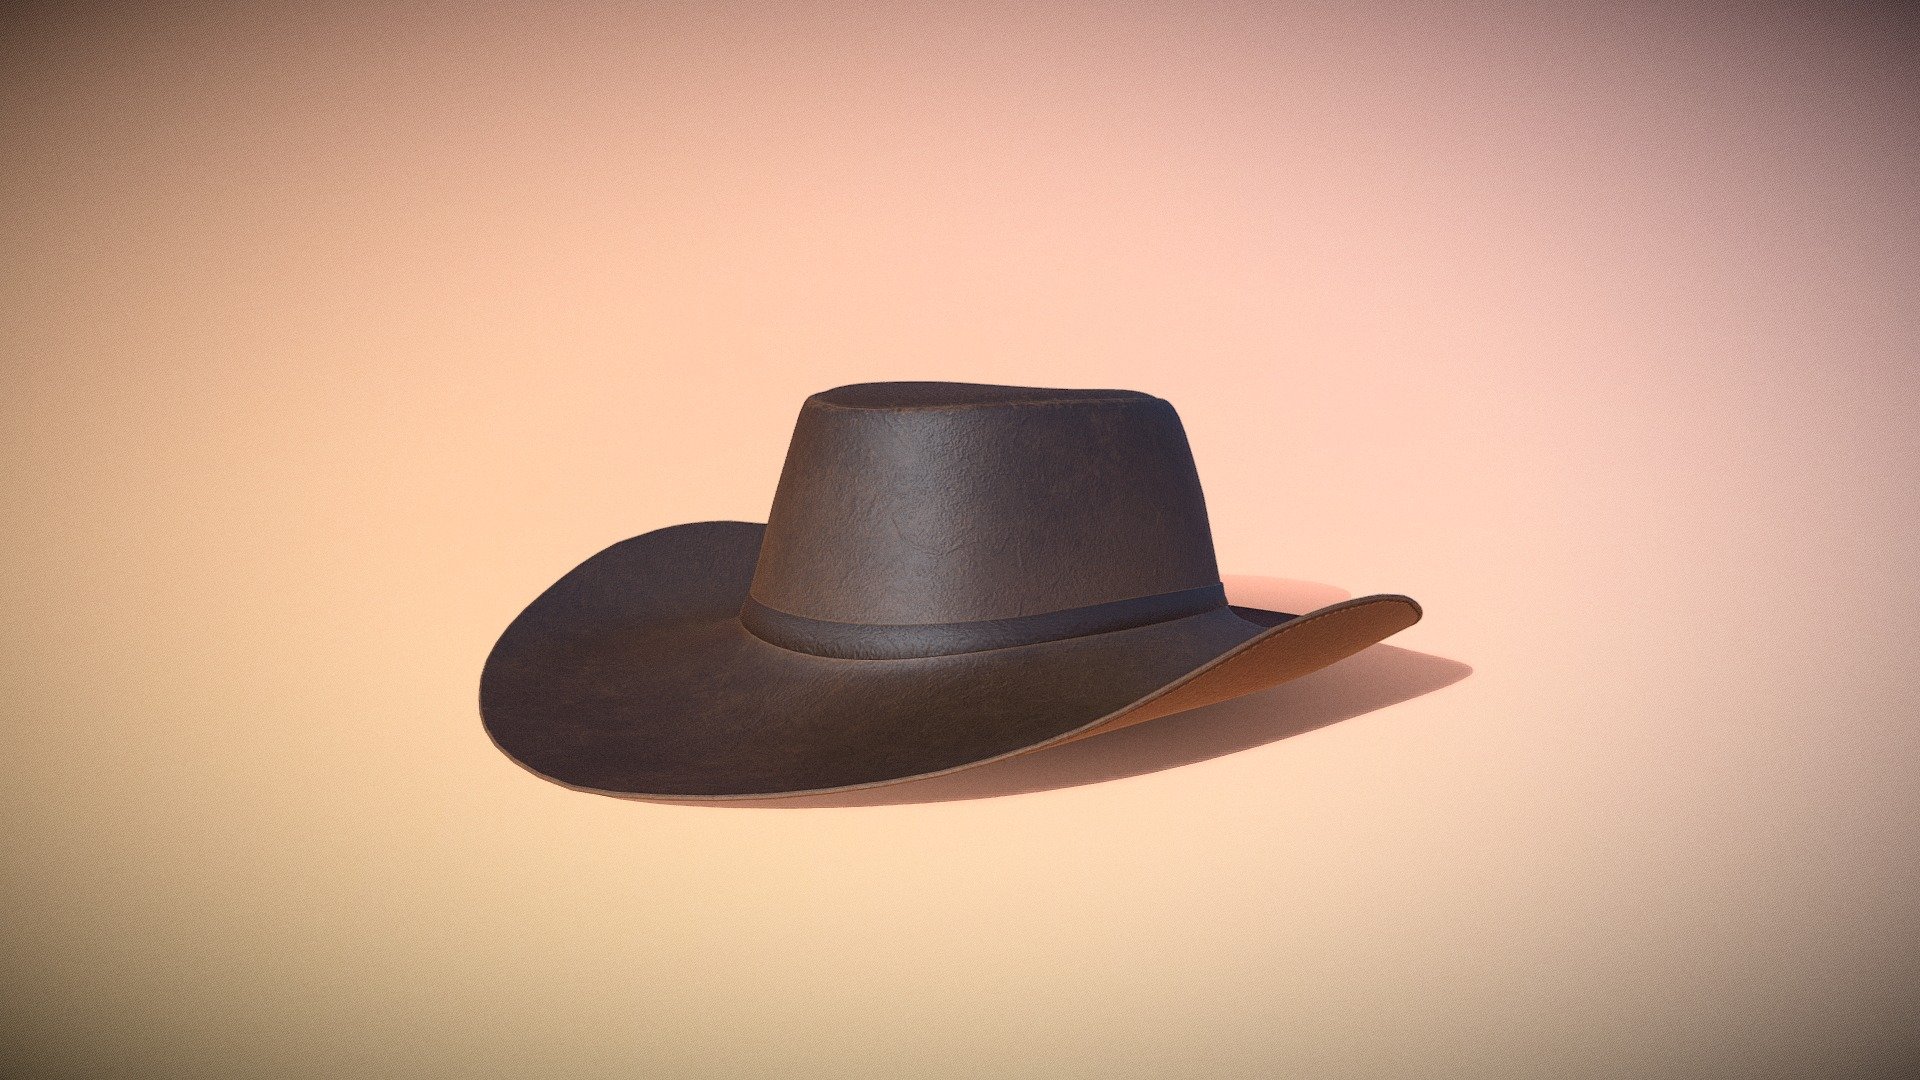 A leather cowboy hat 3d model